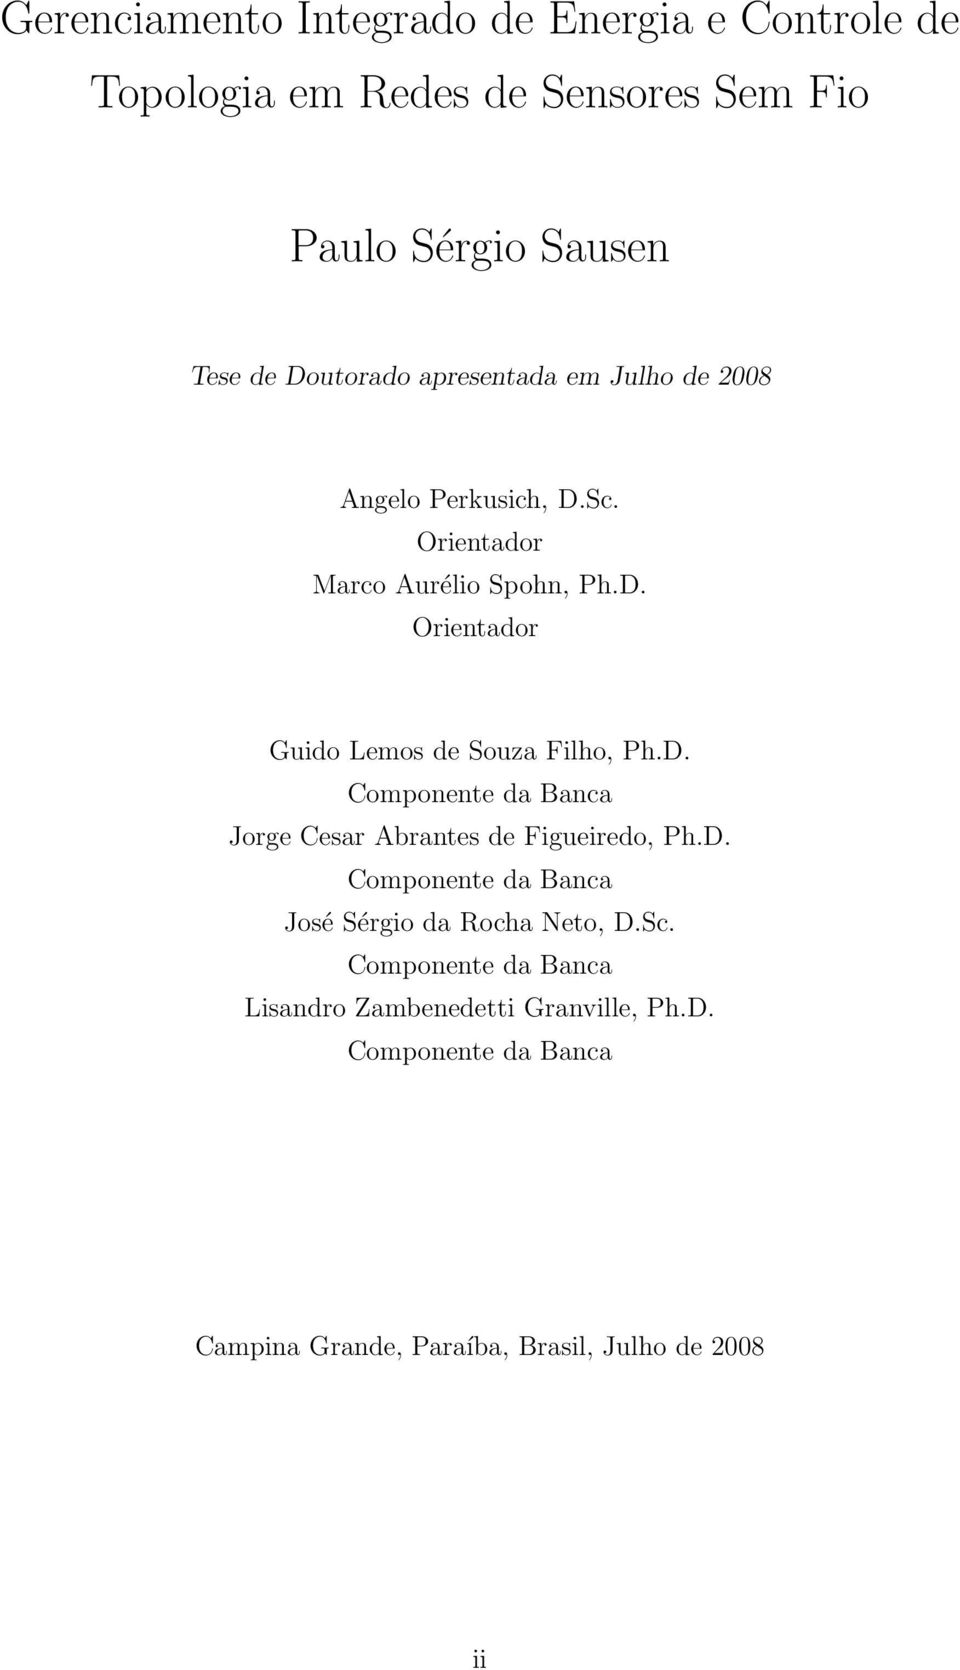 D. Componente da Banca Jorge Cesar Abrantes de Figueiredo, Ph.D. Componente da Banca José Sérgio da Rocha Neto, D.Sc.